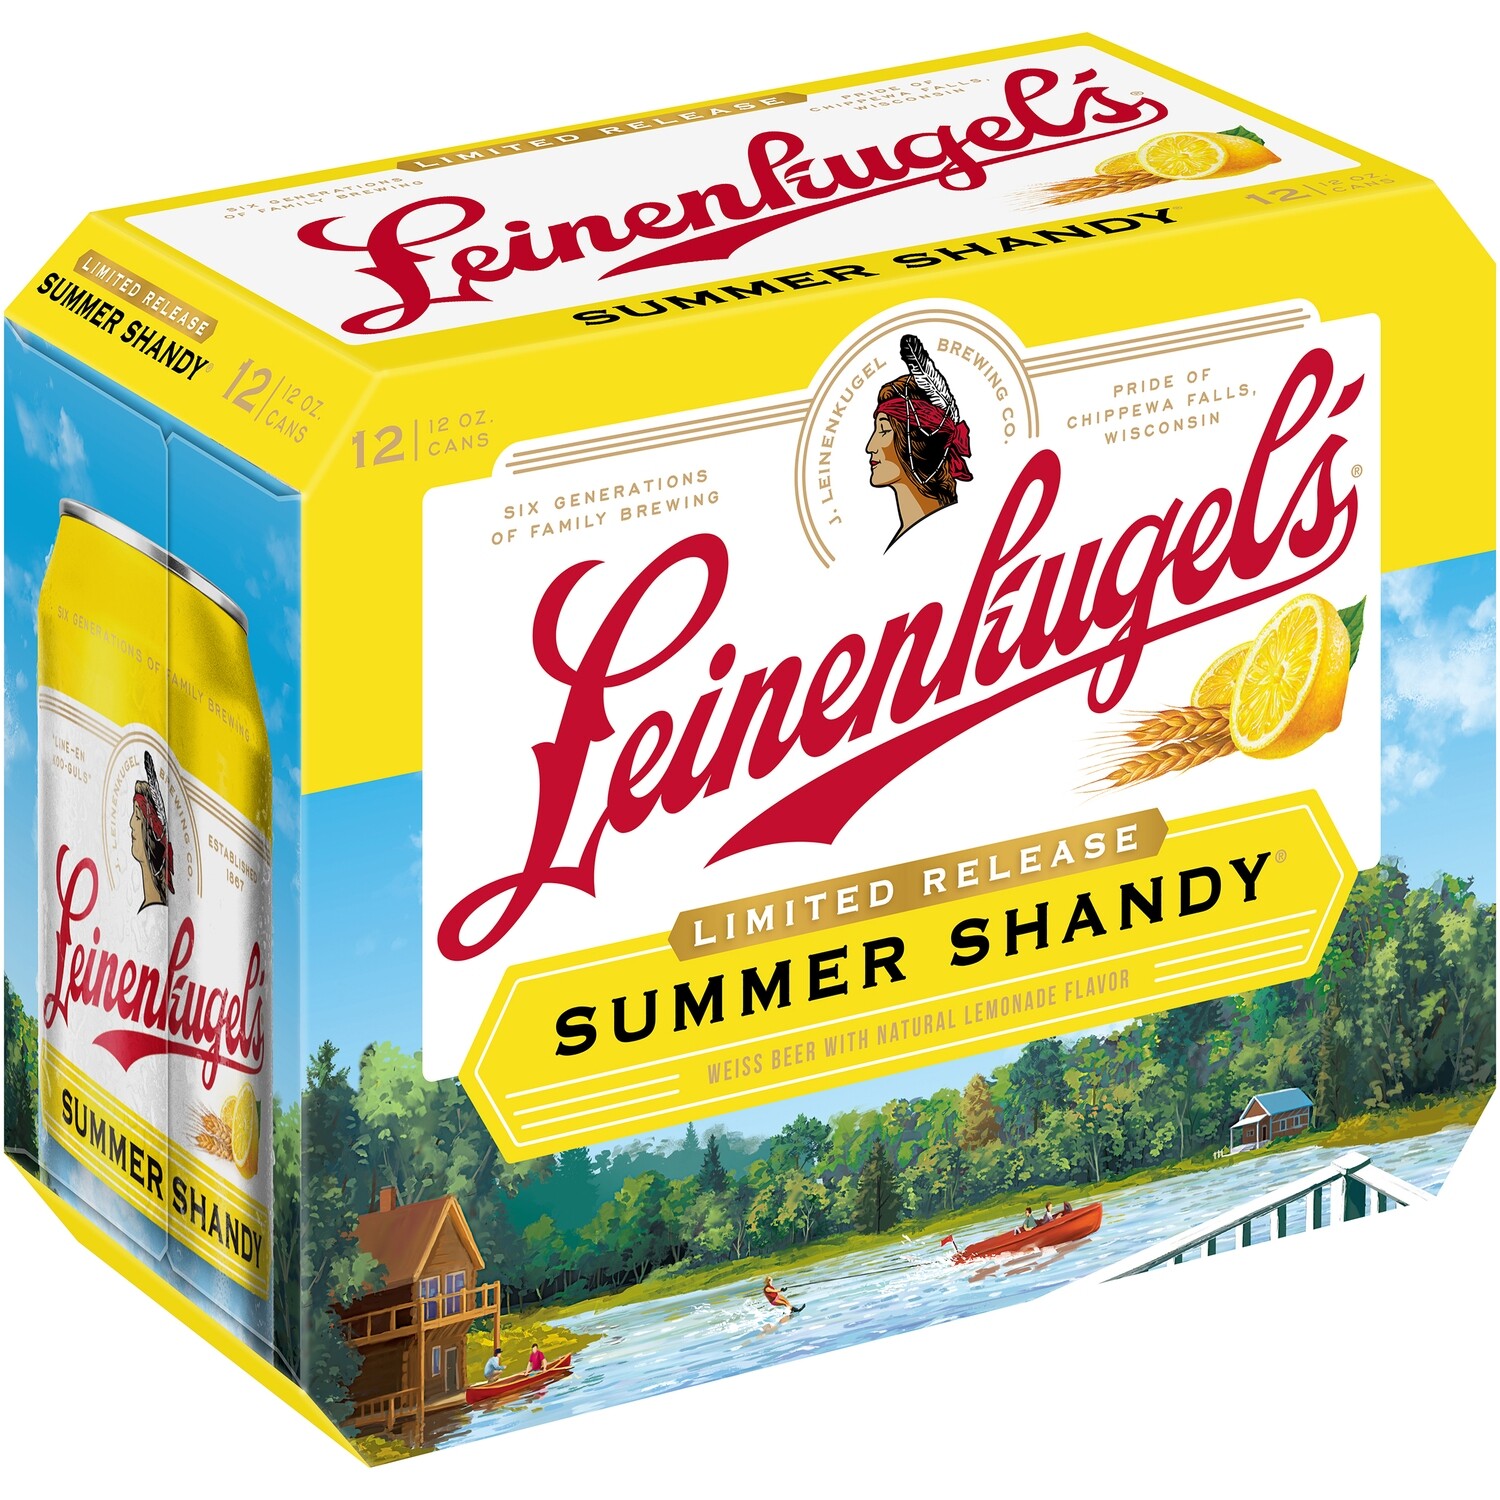 Leinenkugel's Summer Shandy 12pk can